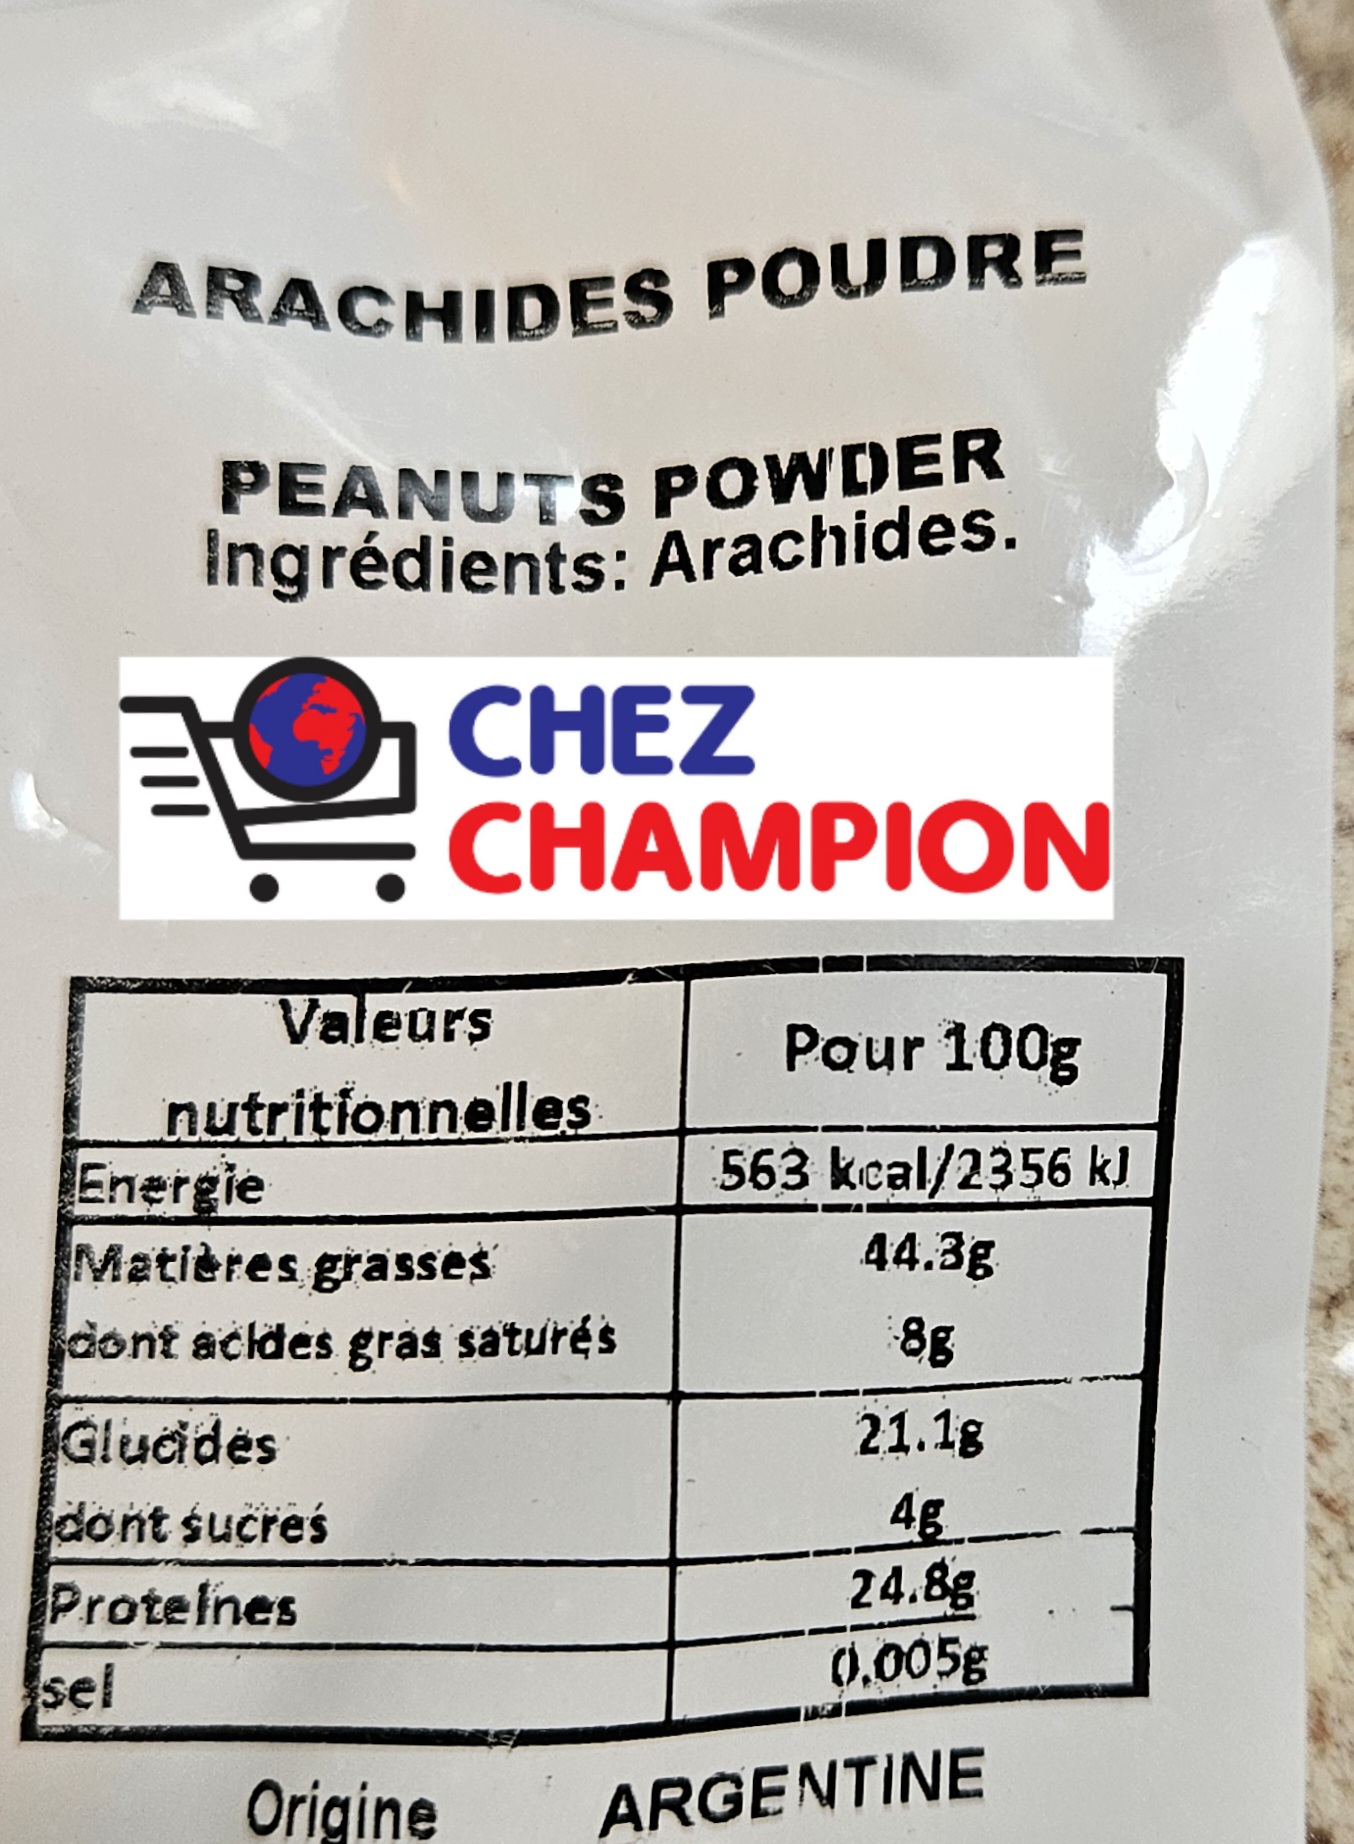 Arachides poudre – peanuts powder – 500g